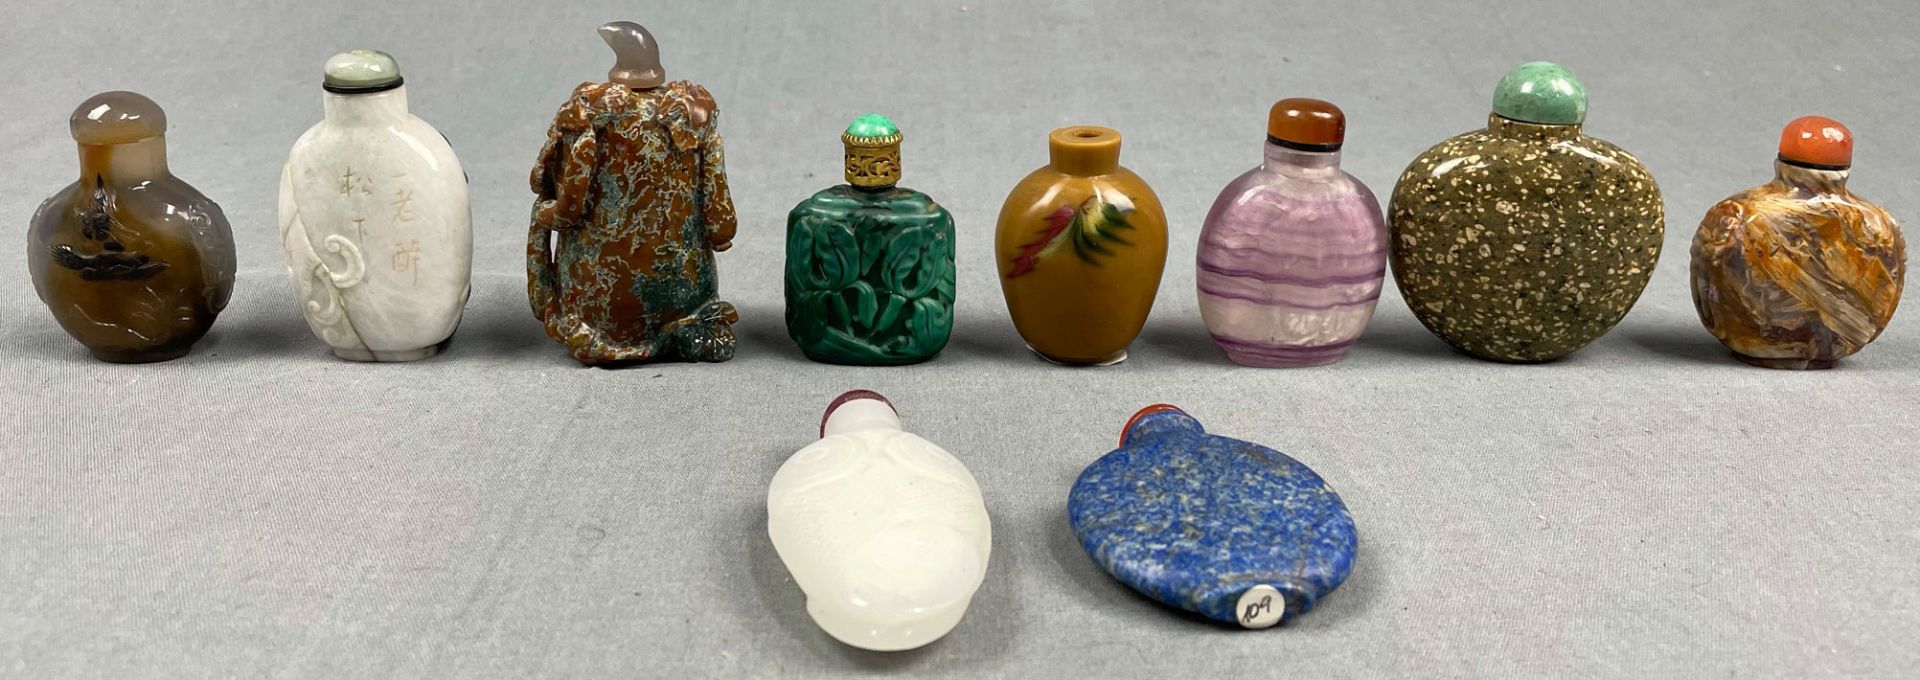 10 feine Snuff Bottles. Wohl China, Japan antik. - Image 3 of 9